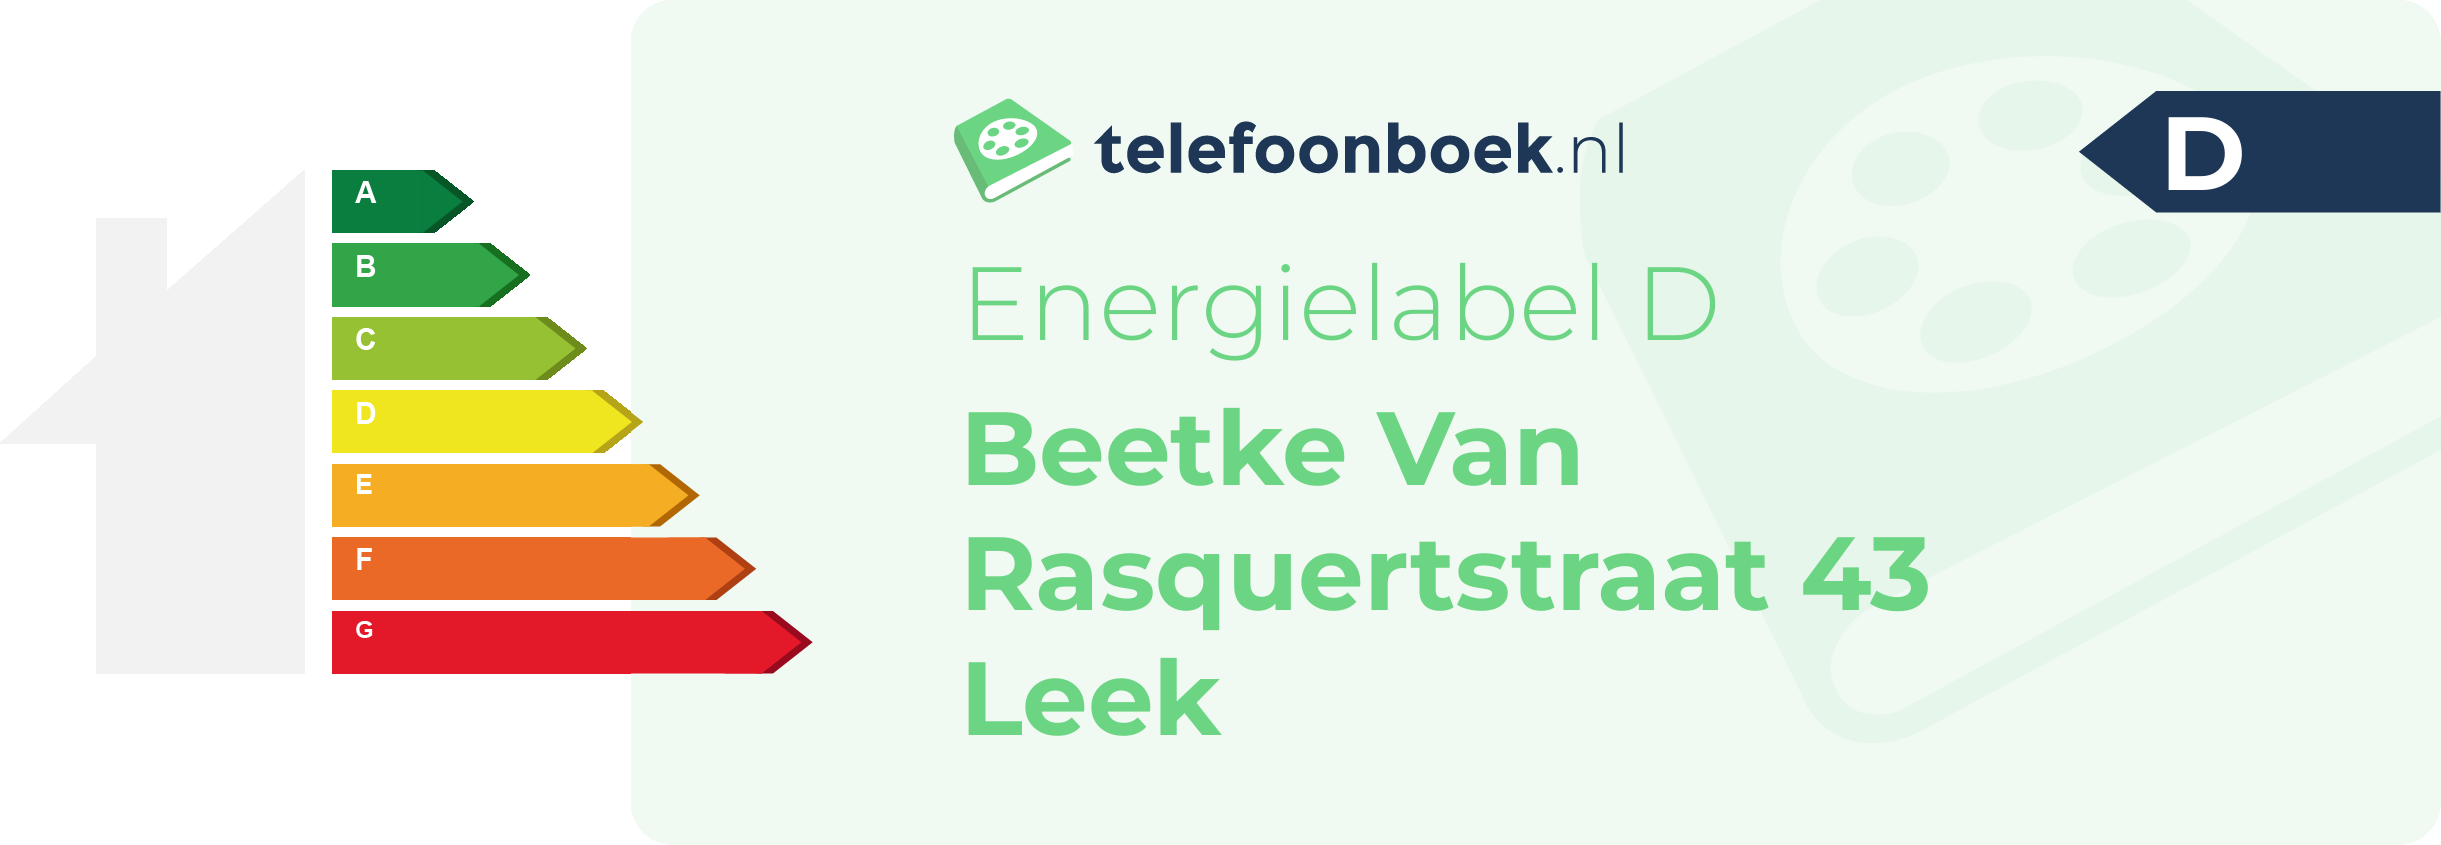 Energielabel Beetke Van Rasquertstraat 43 Leek